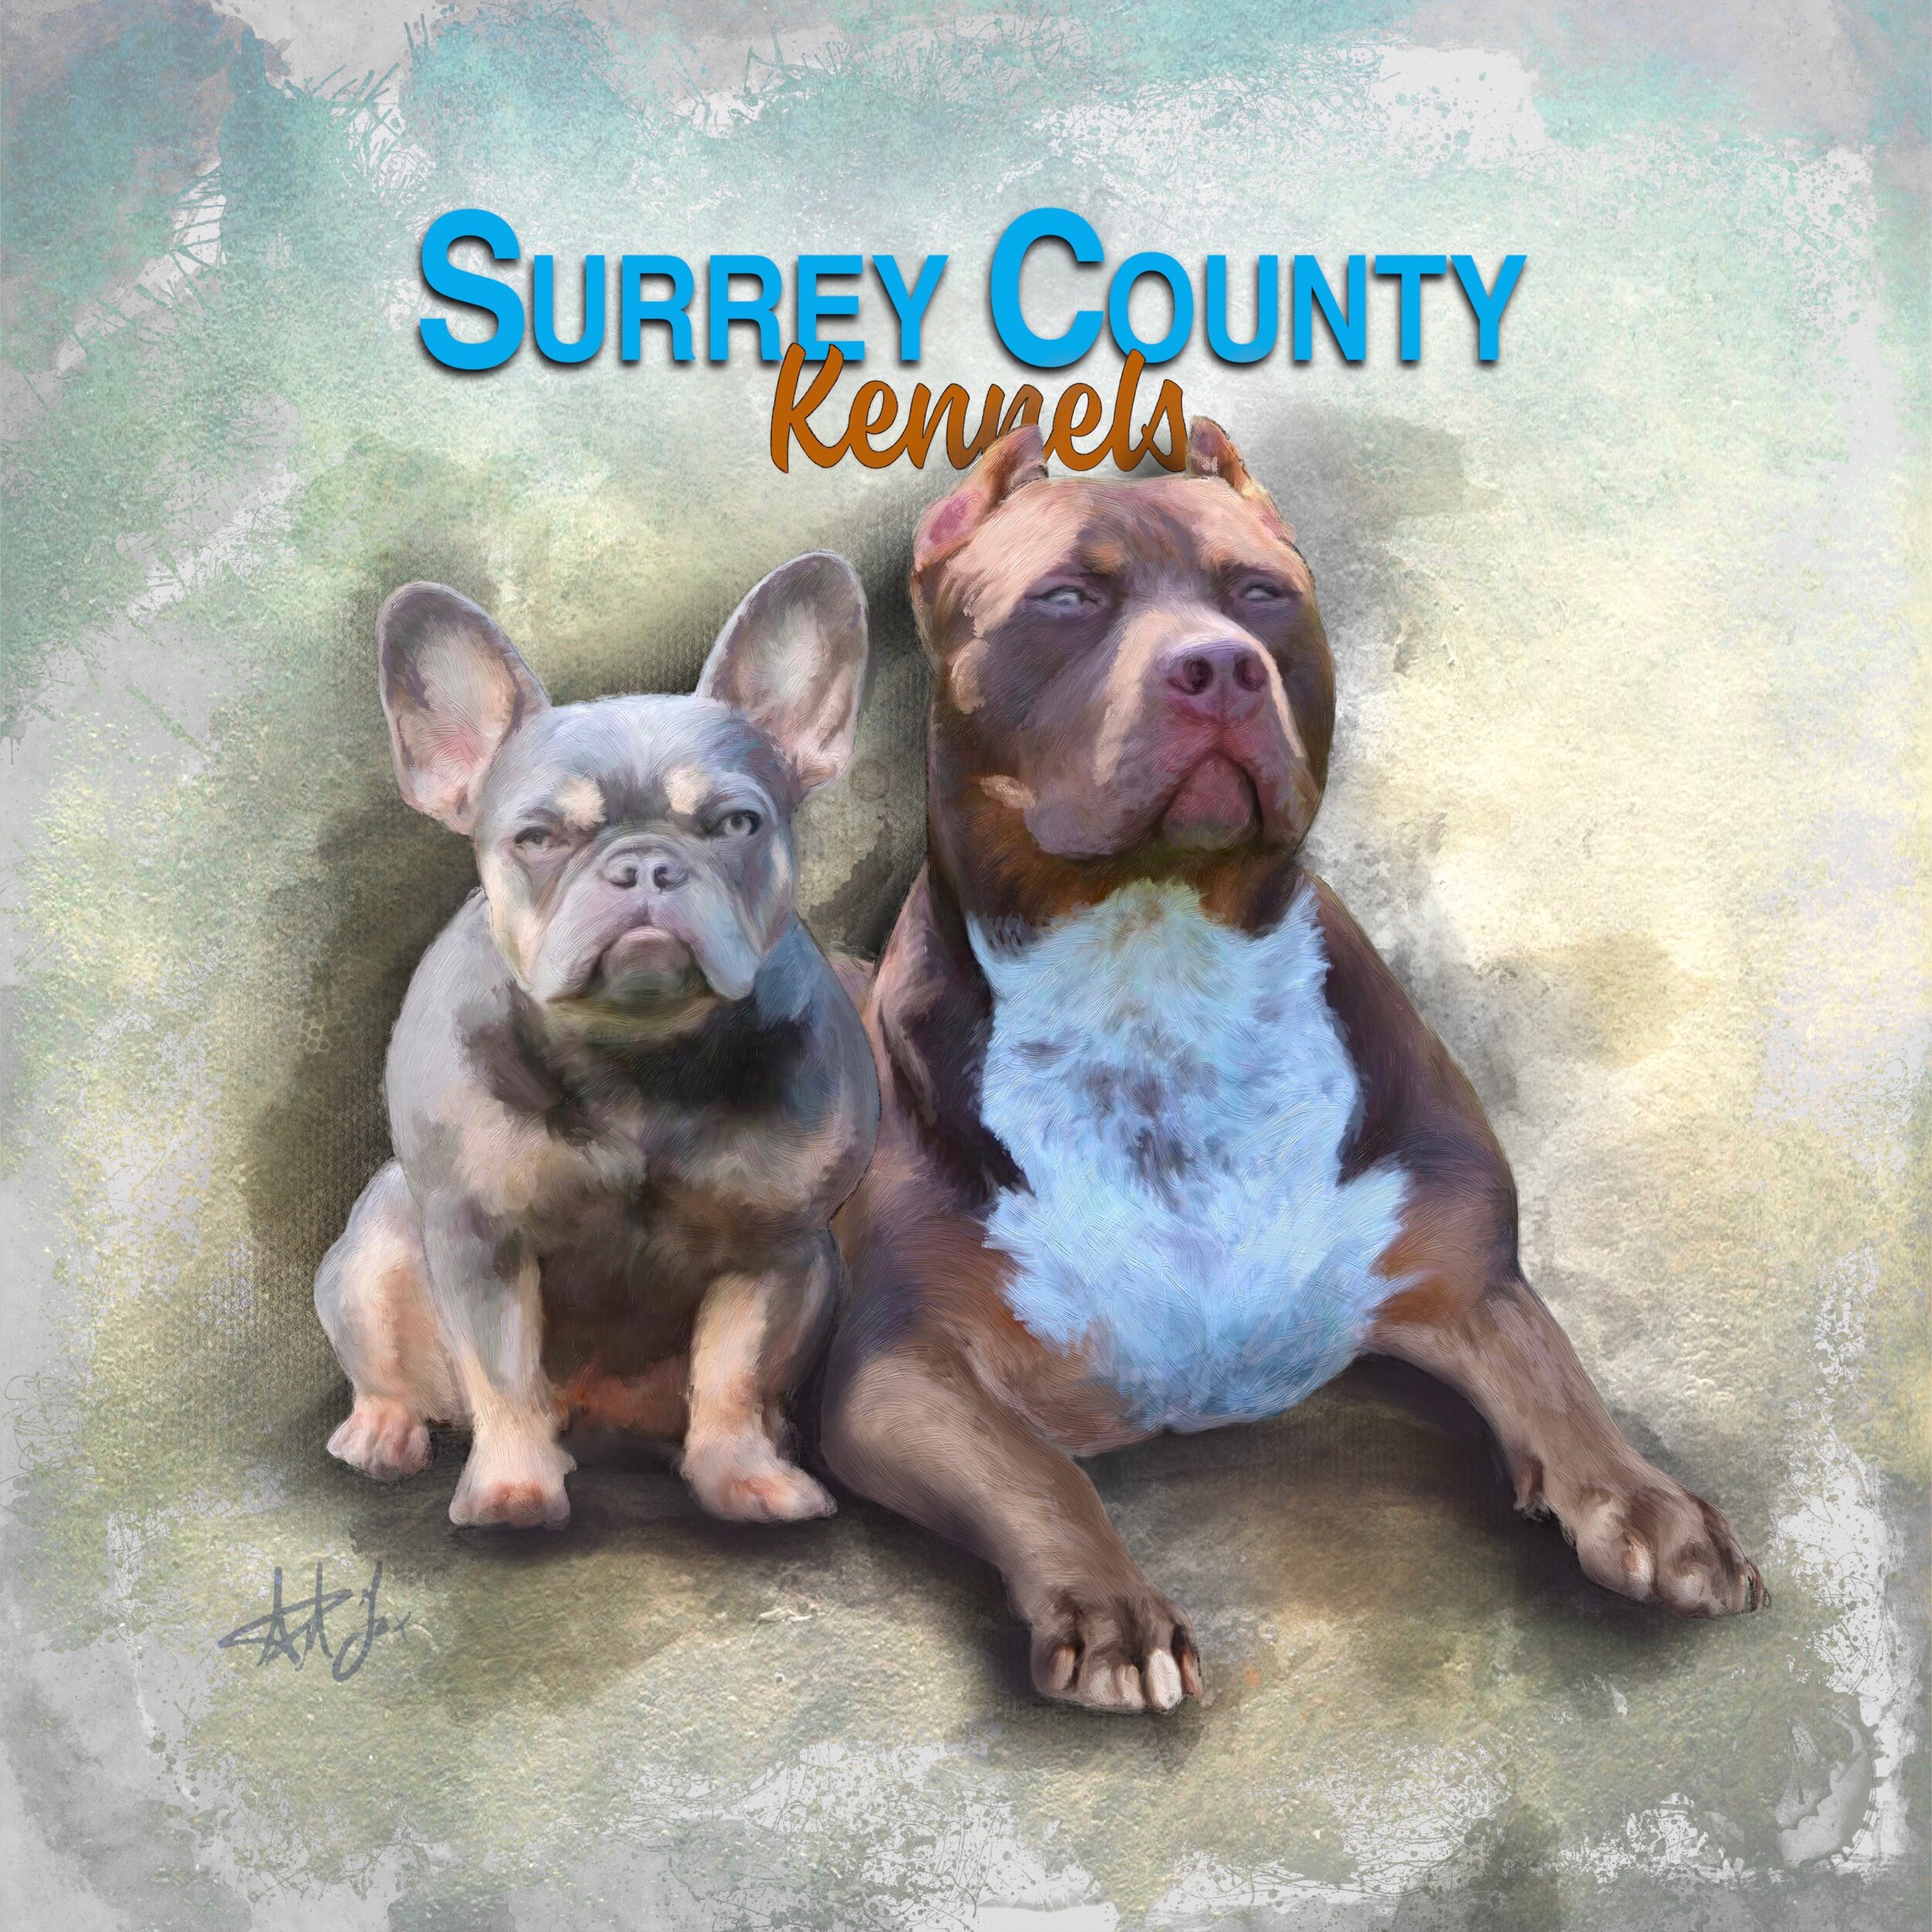 Surrey county kennels.jpg